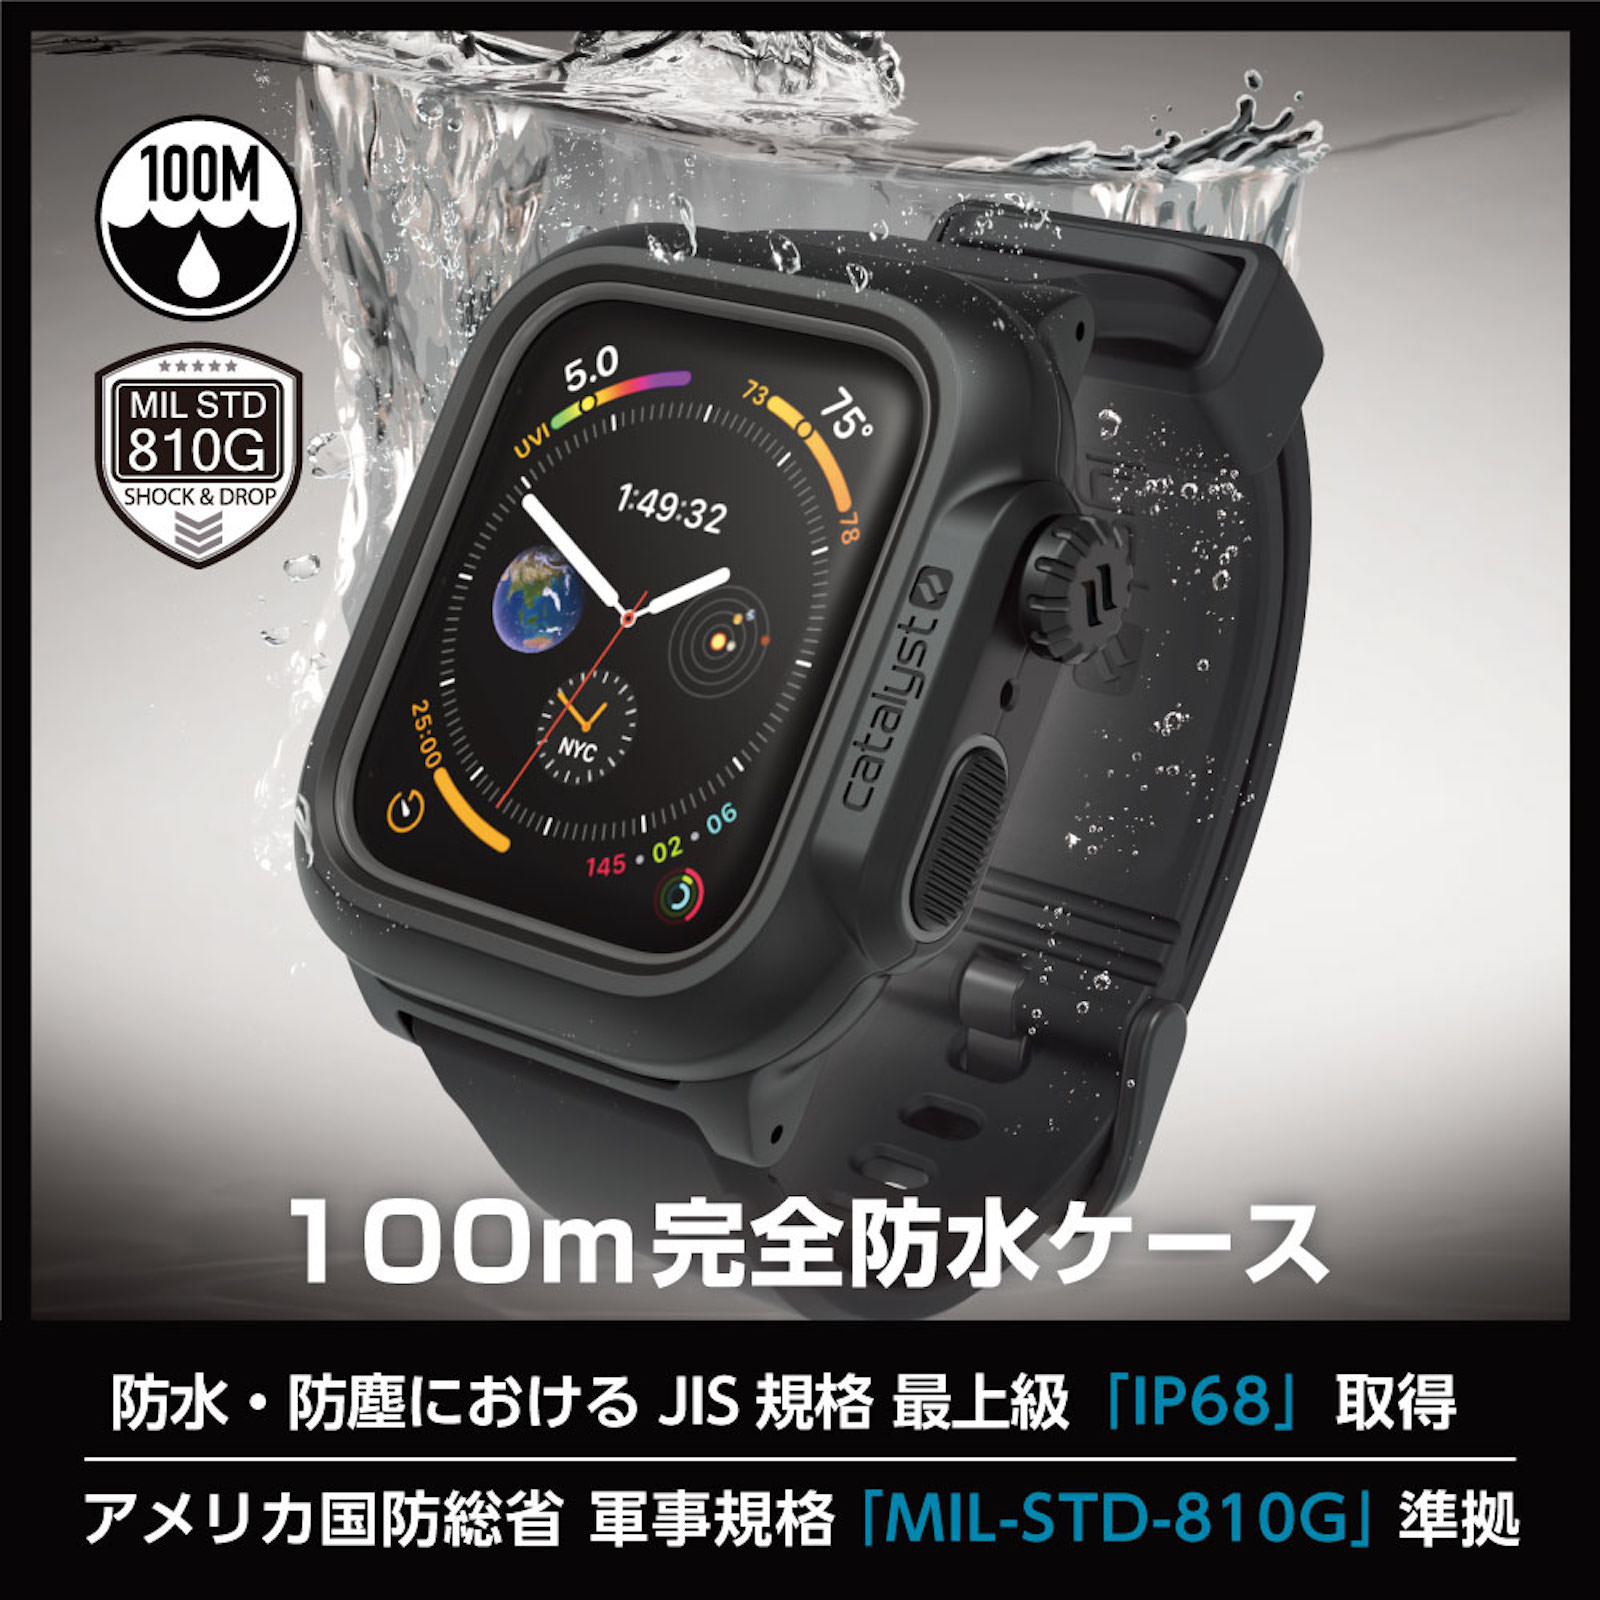 Apple Watch Series 4の44mmモデル用「カタリスト 完全防水ケース」、5月17日発売へ | ゴリミー